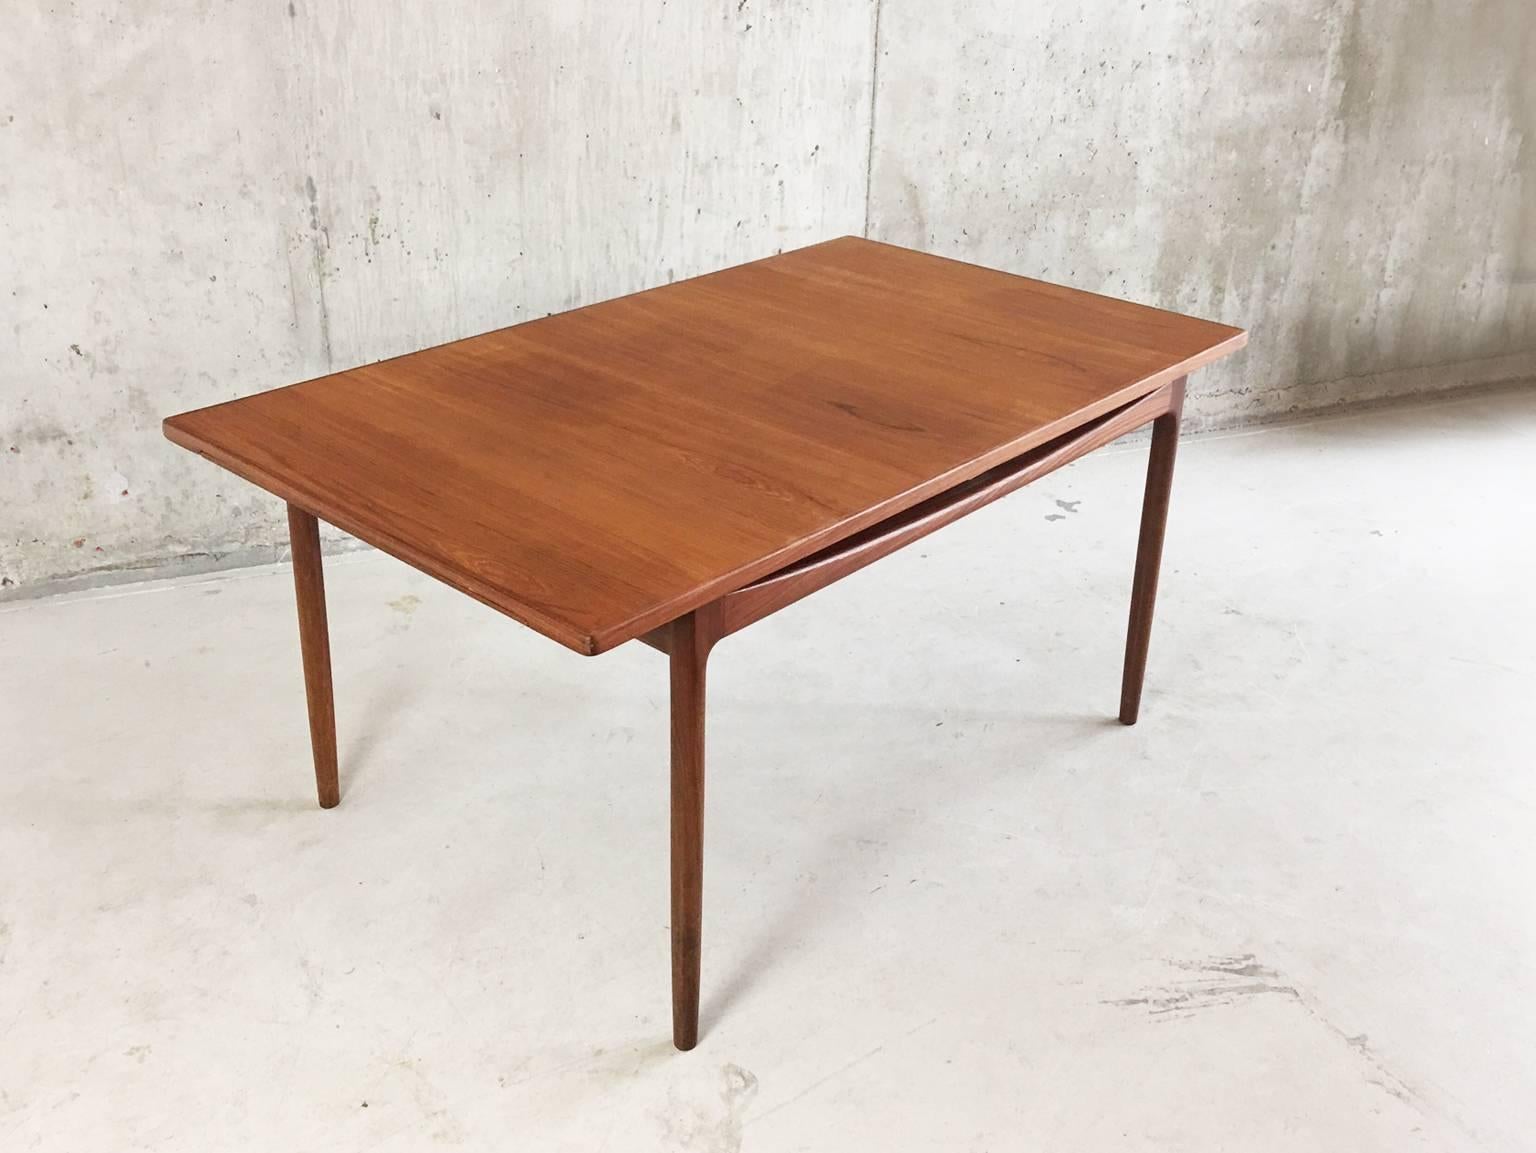 Great Britain (UK) Ib Kofod-Larsen for G-Plan’s Danish Range 1960s Teak Extendable Dining Table For Sale